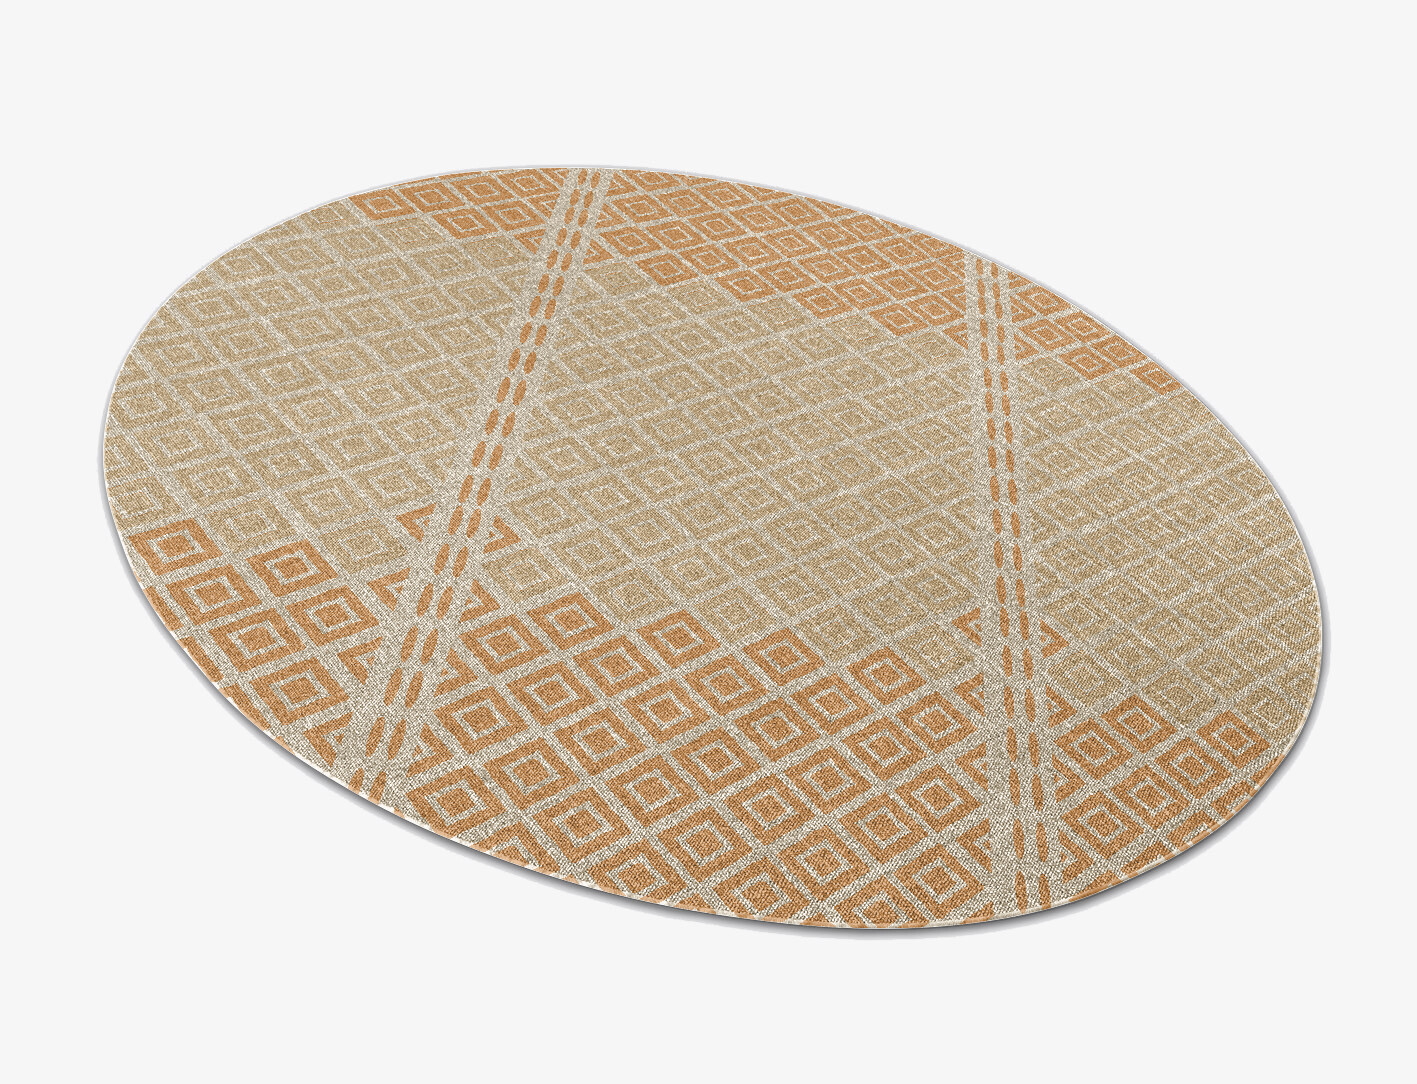 Solstice Flatweaves Oval Outdoor Recycled Yarn Custom Rug by Rug Artisan